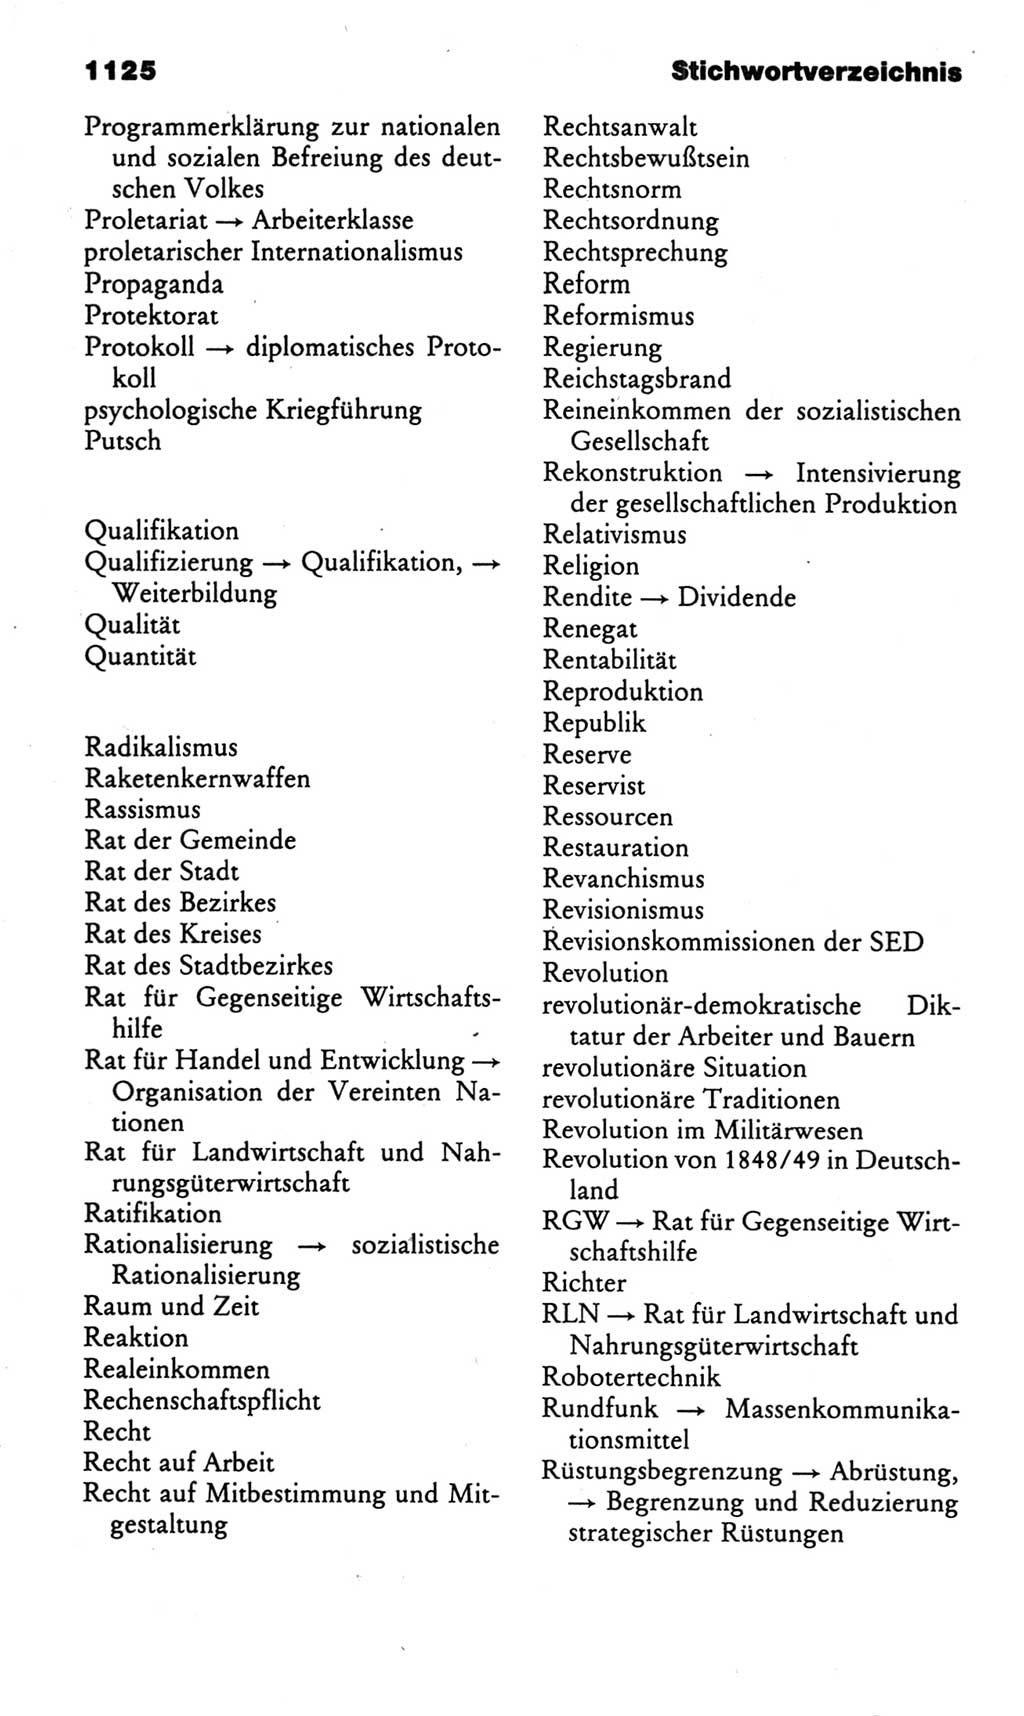 Kleines politisches Wörterbuch [Deutsche Demokratische Republik (DDR)] 1985, Seite 1125 (Kl. pol. Wb. DDR 1985, S. 1125)